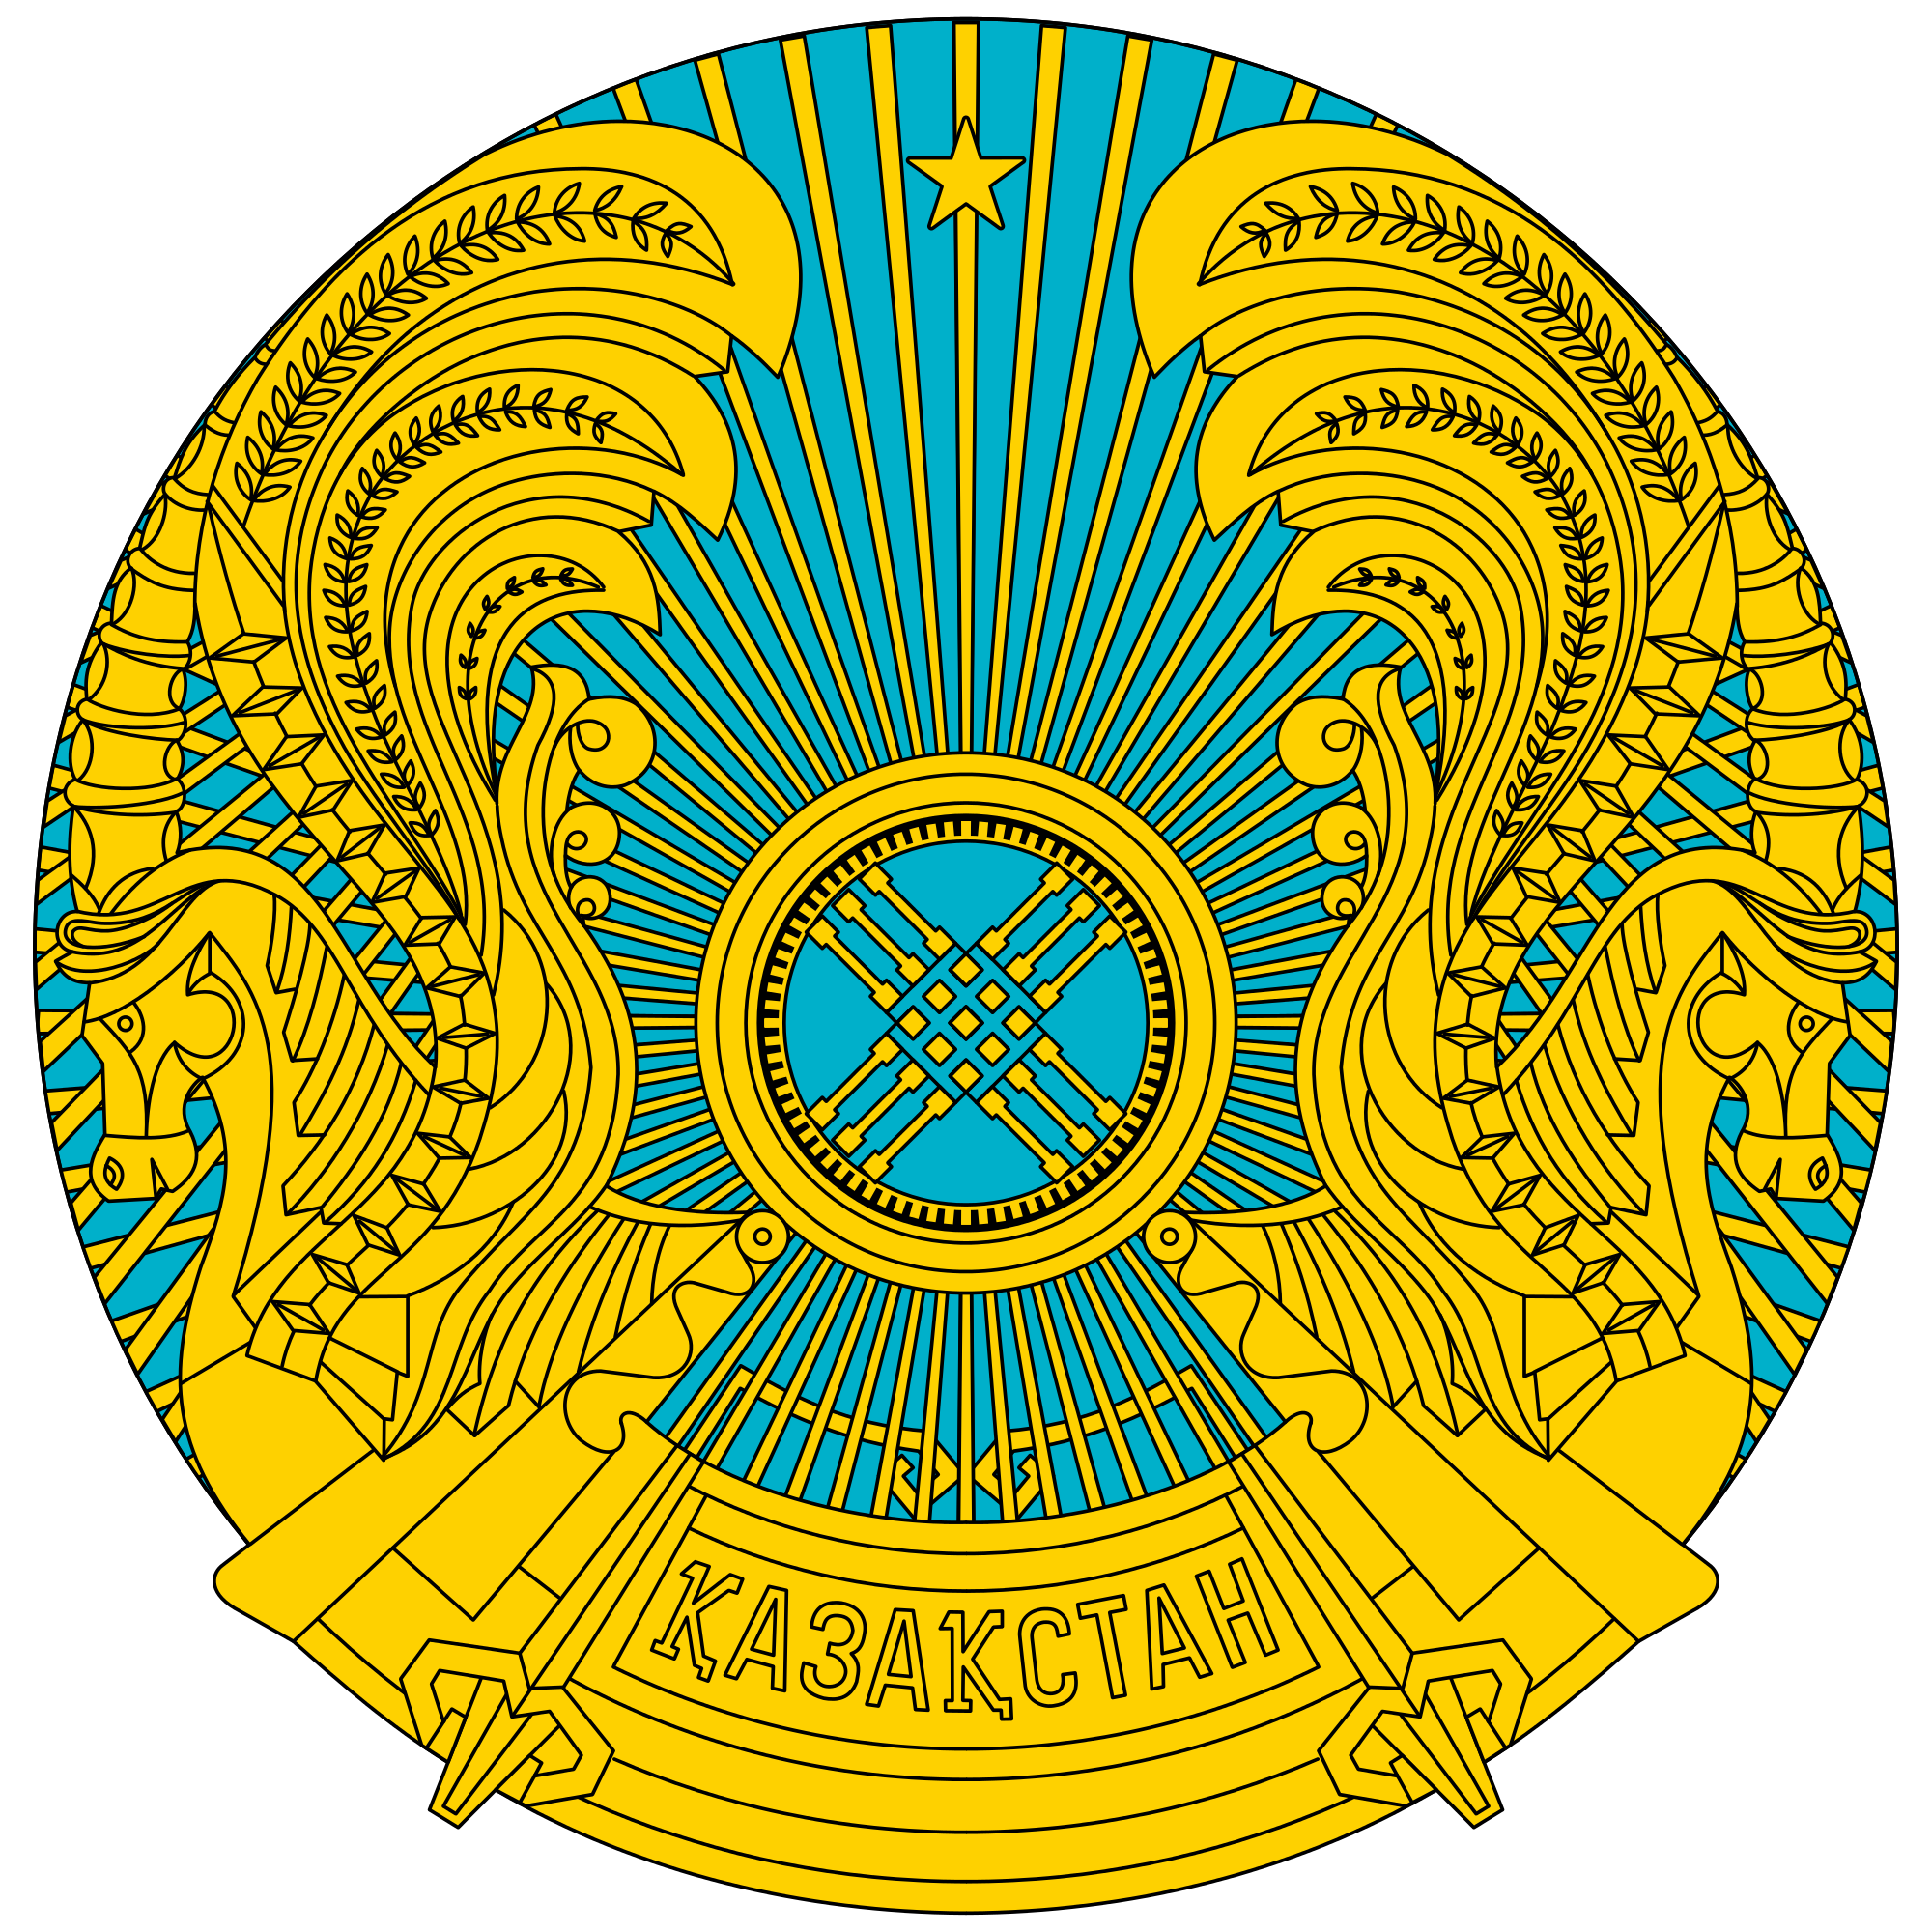 Kazakhstan Emblem